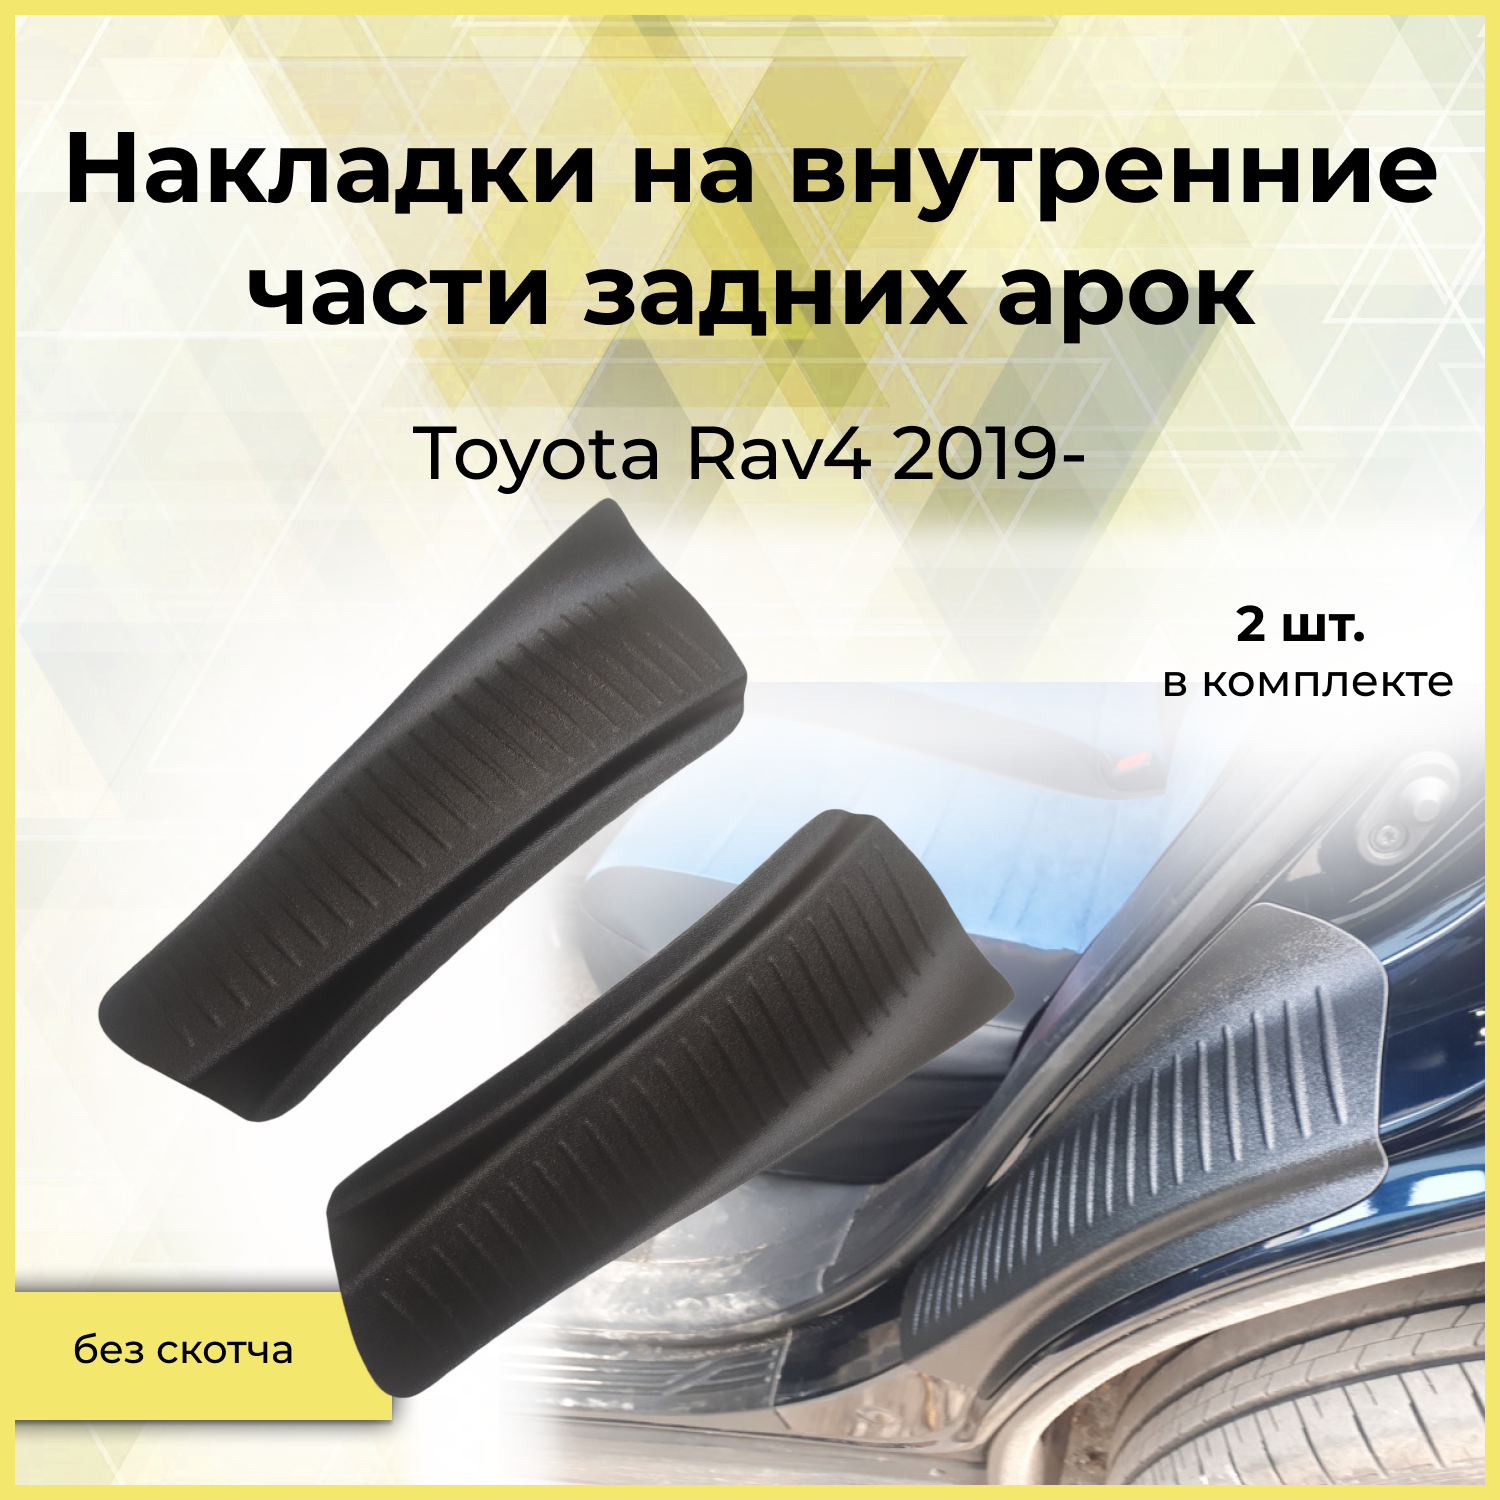 Накладки на внутренние части задних арок для Toyota Rav4 2019-